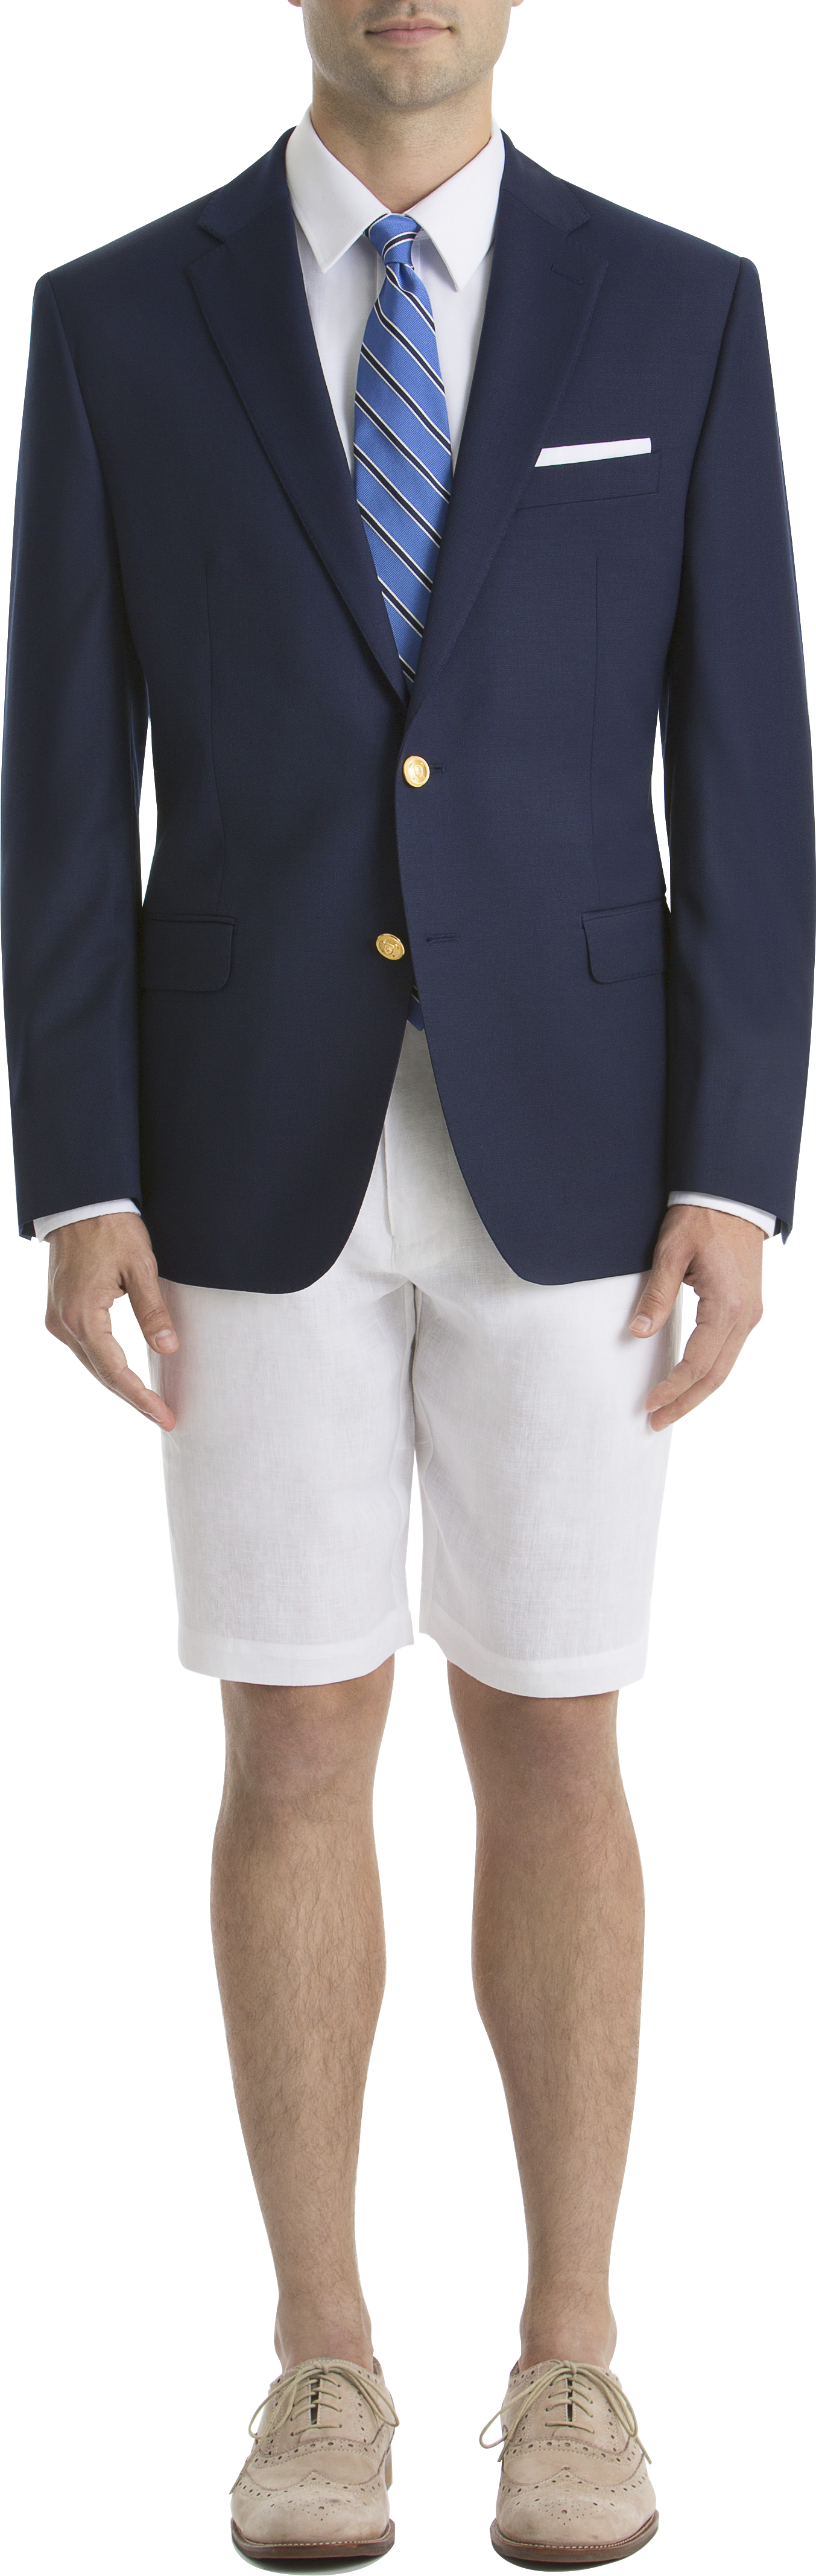 Lauren By Ralph Lauren Classic Fit Blazer, Bright Navy - Men's Clothing |  Men's Wearhouse